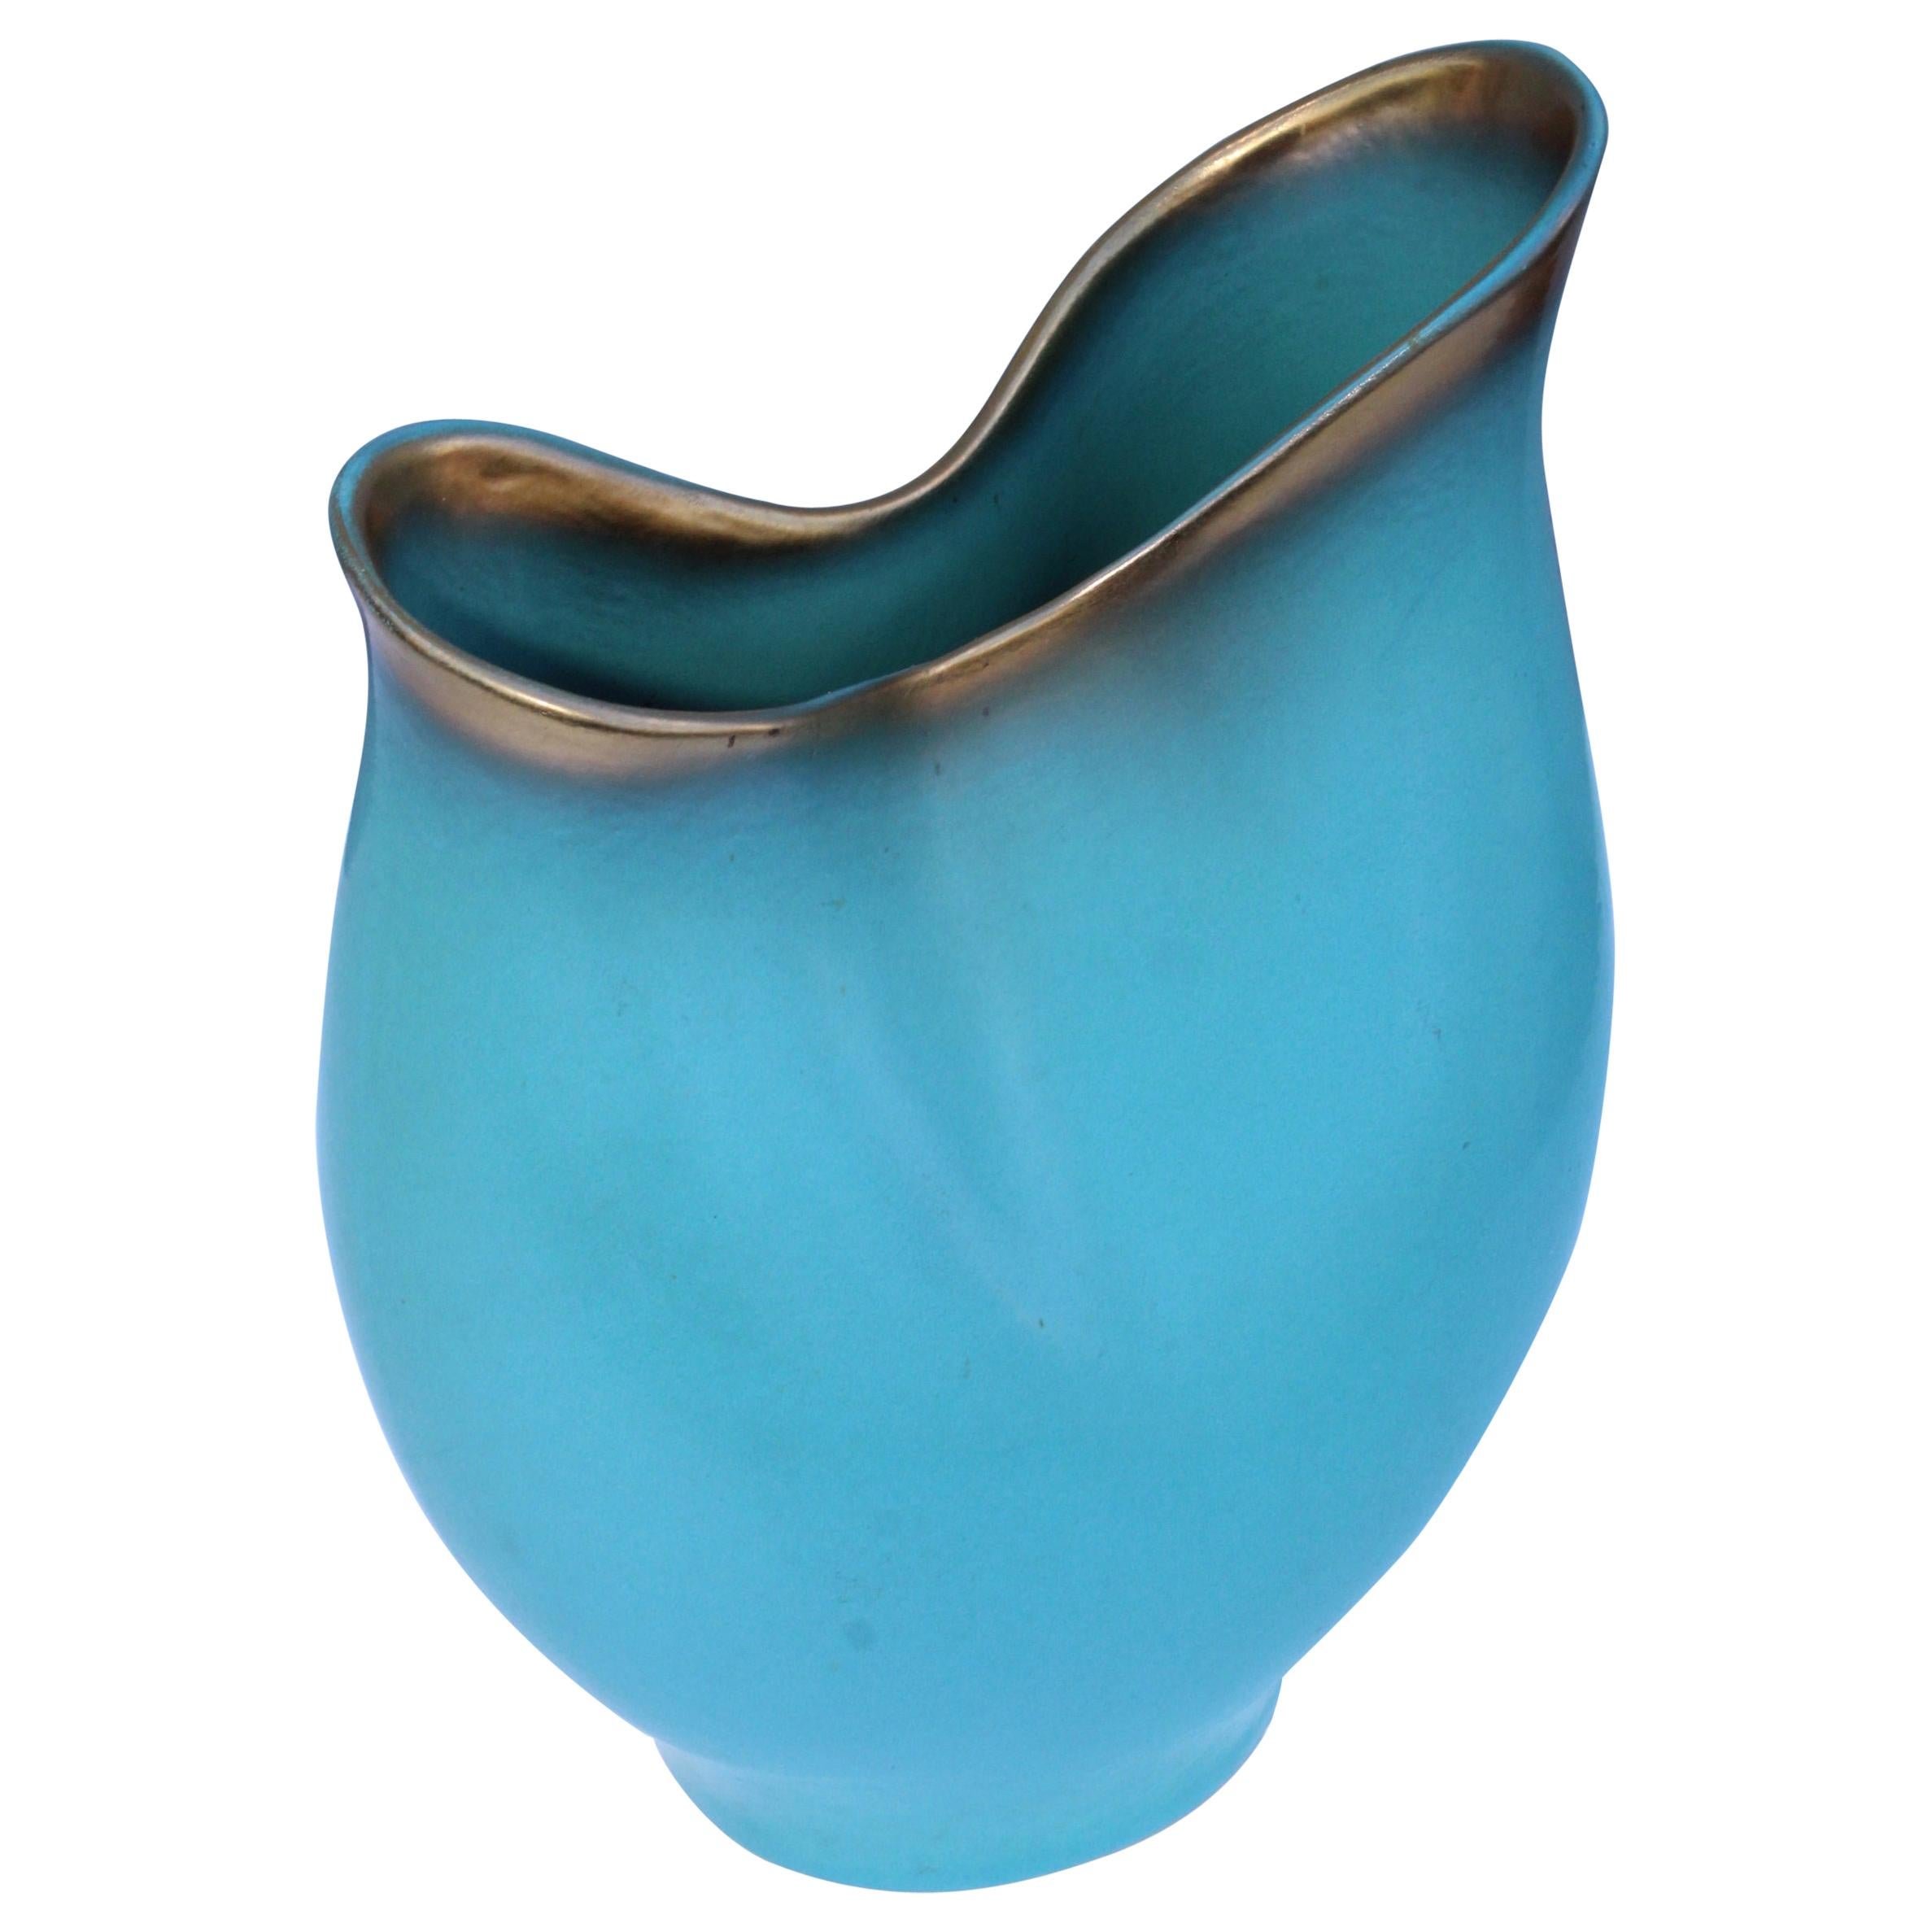 1940s Ceramic Vase by Keramos Austria